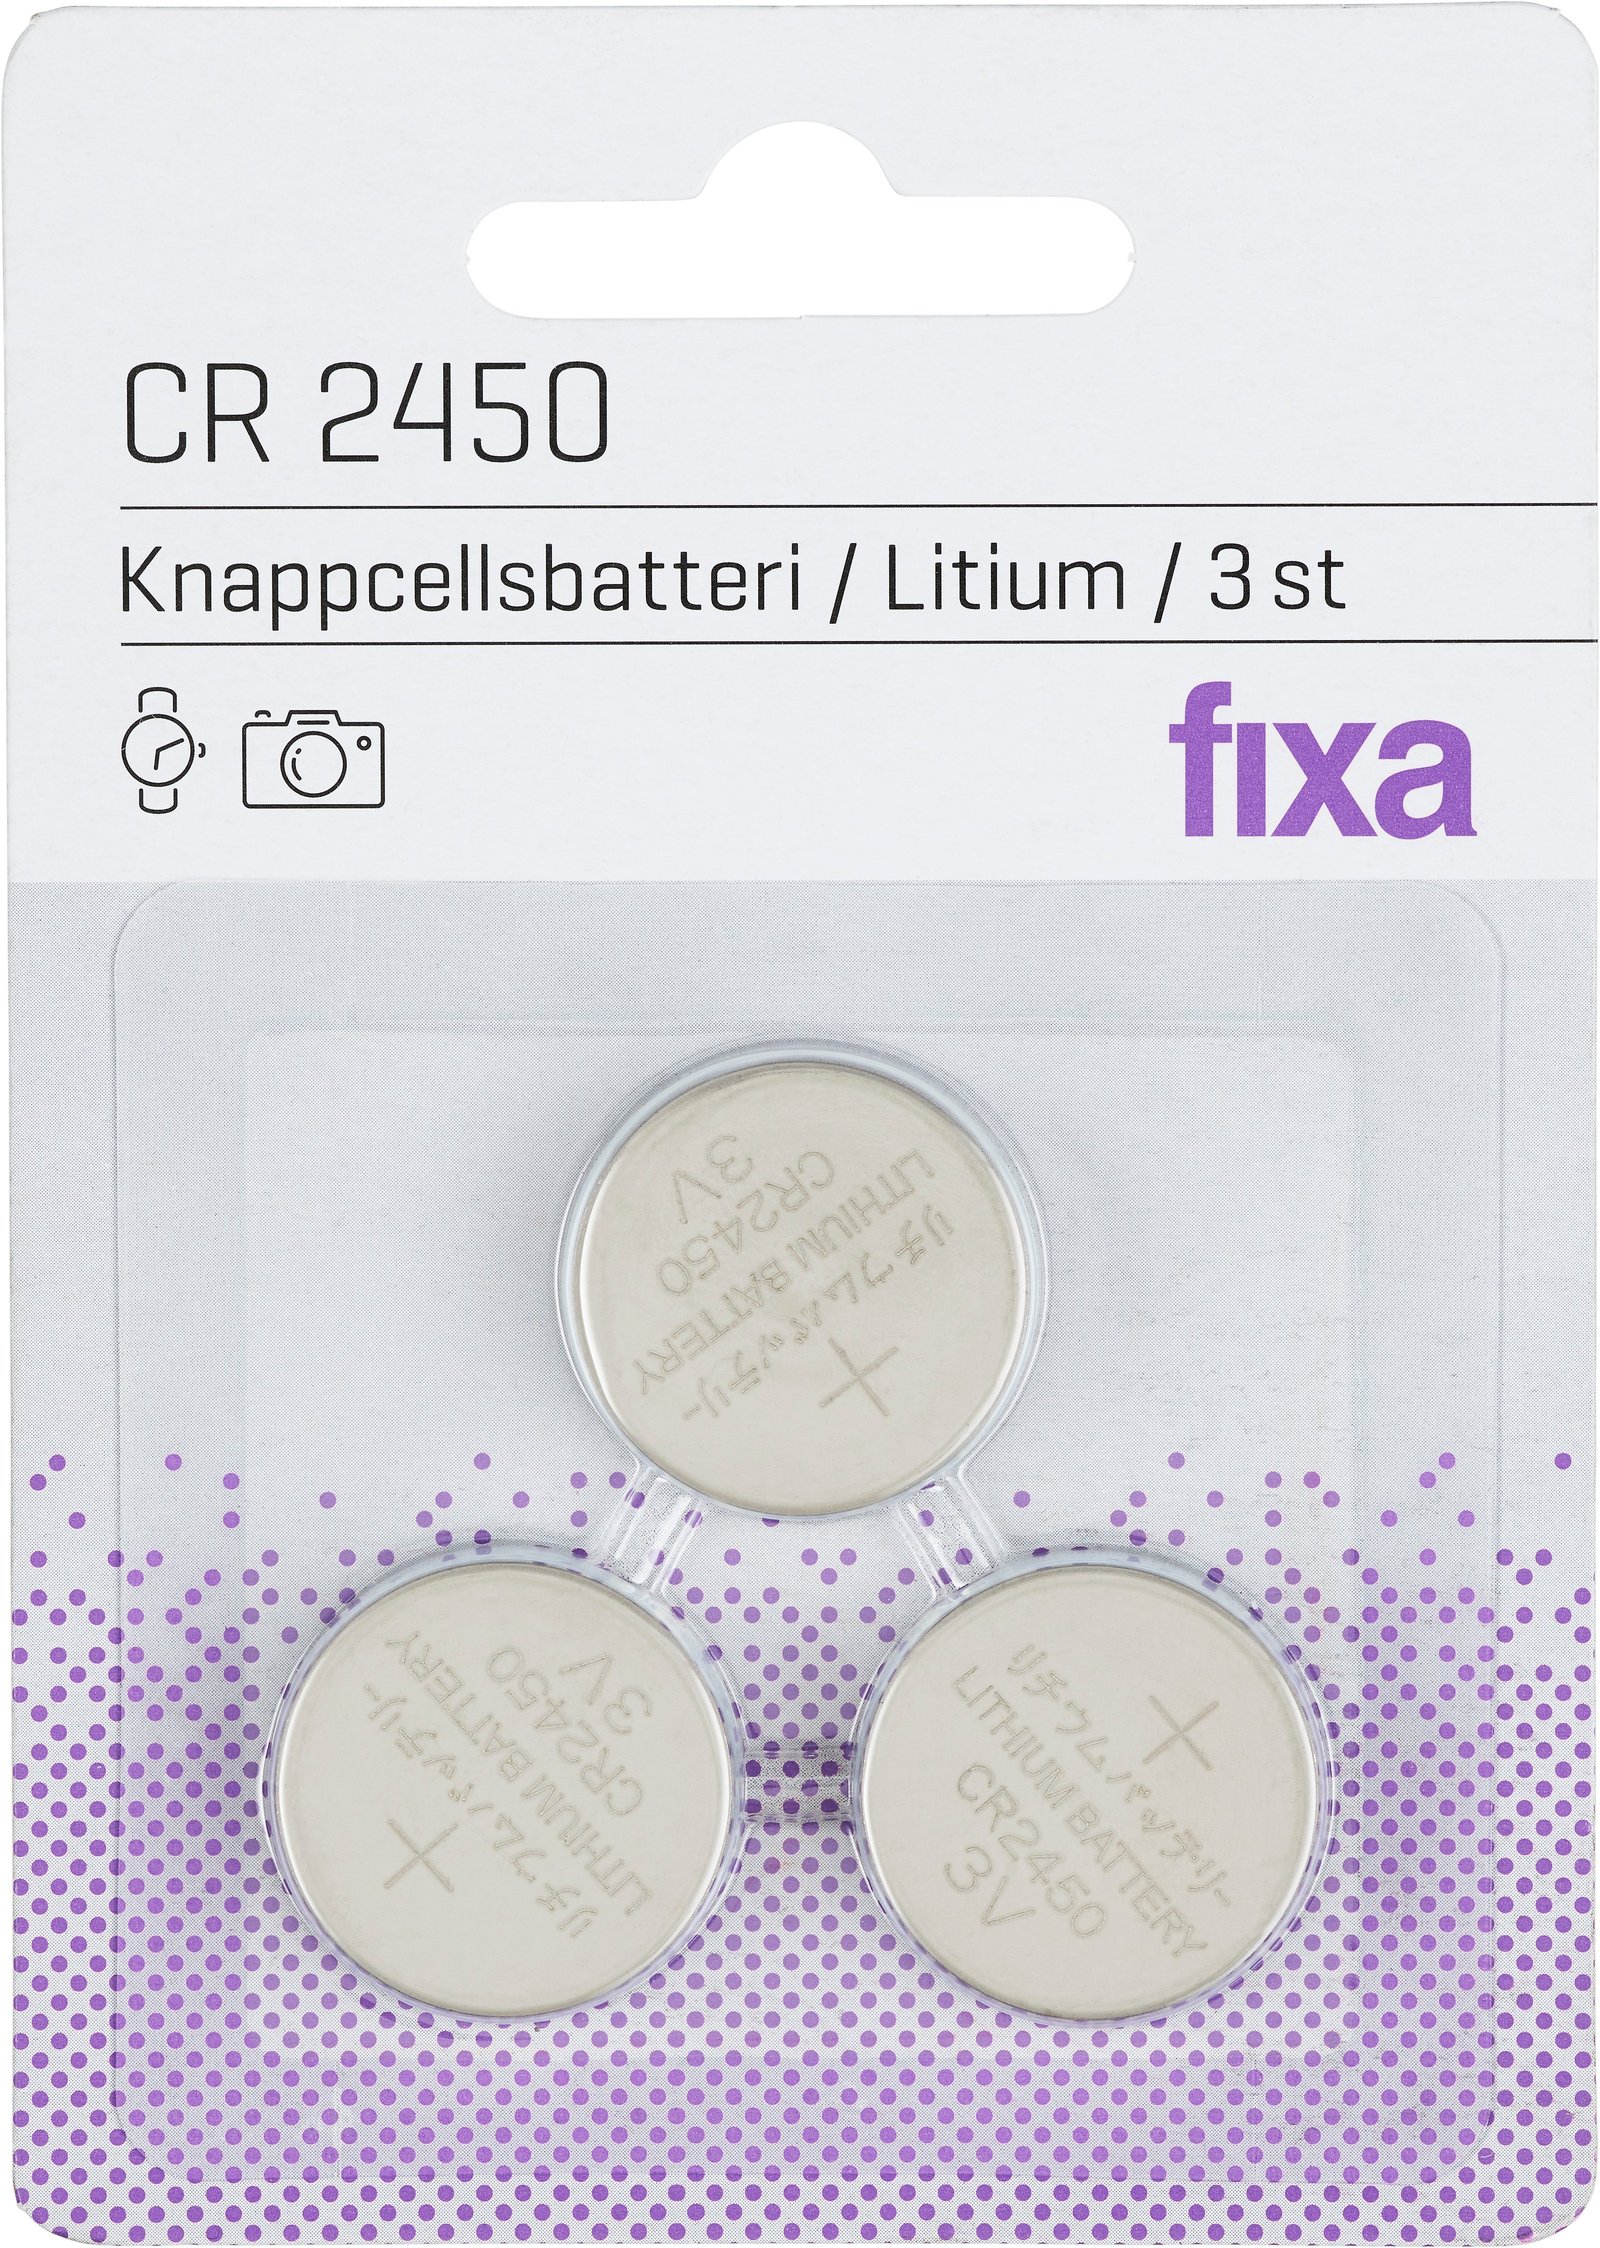 Fixa Knappcellsbatterier 2450 3 st